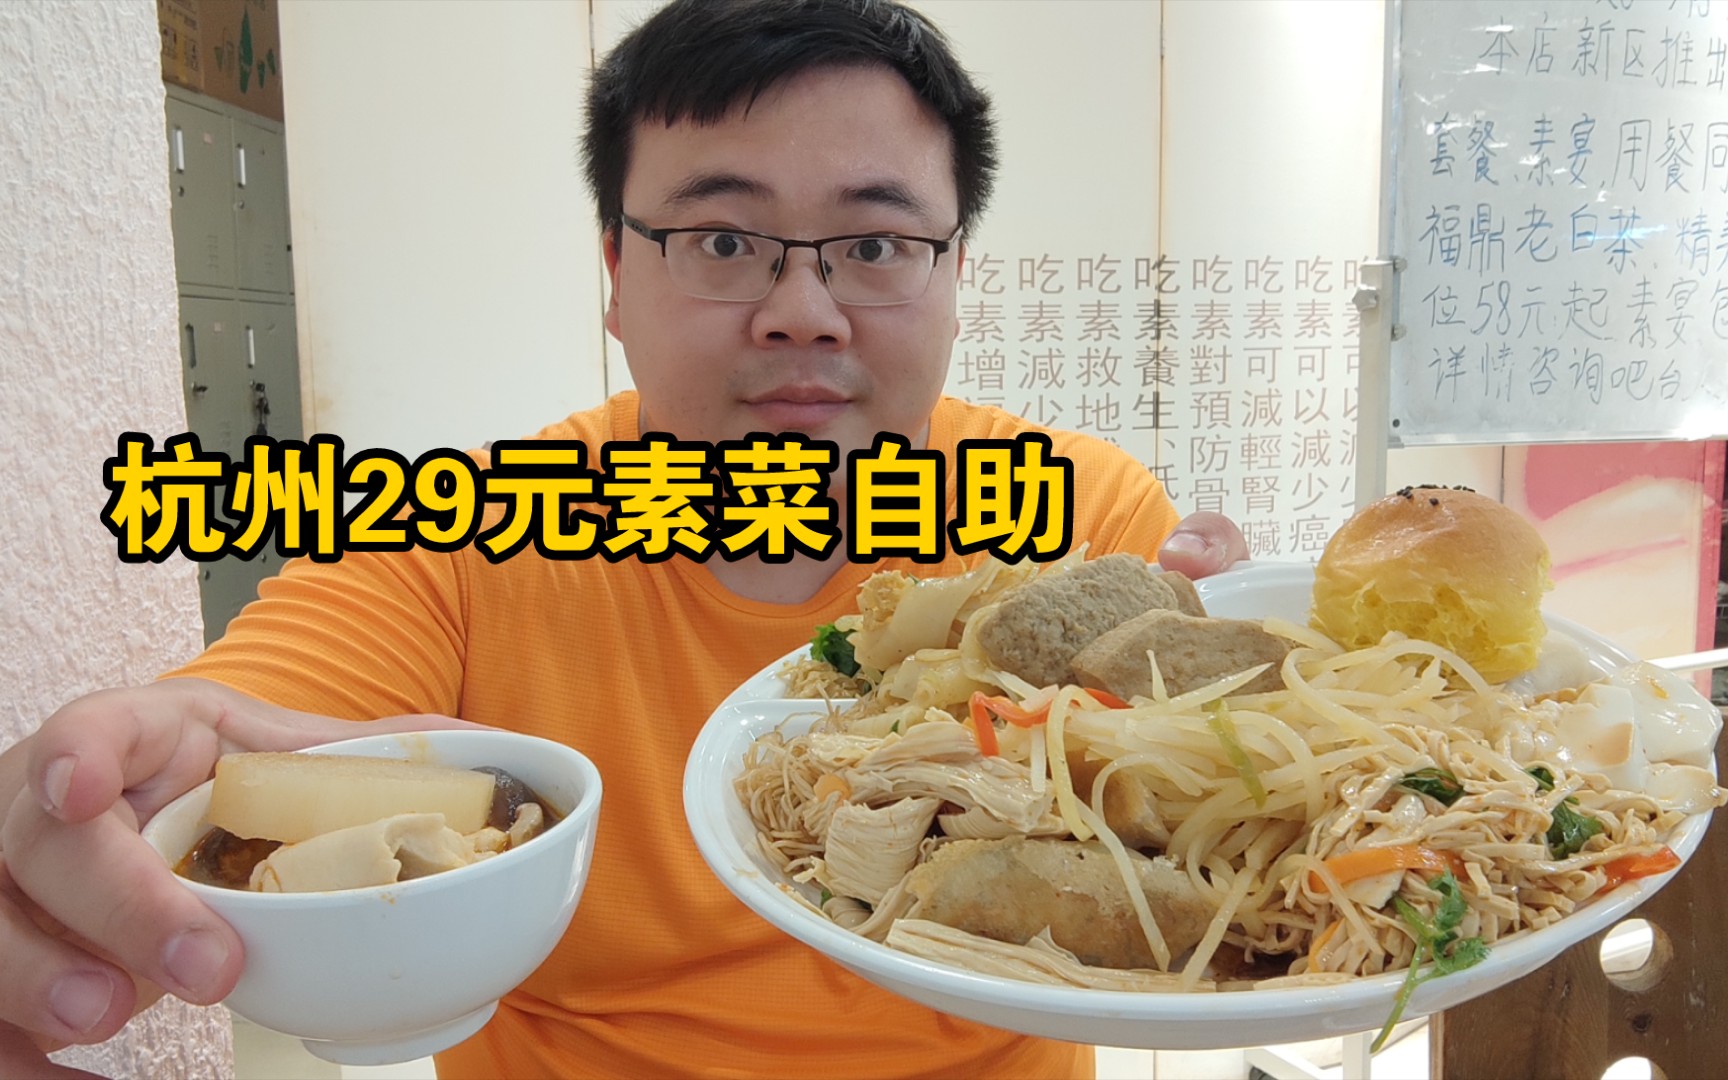 杭州解放路29元素食自助，60多种菜品任吃，素菜也吃的好过瘾 【素食堂】